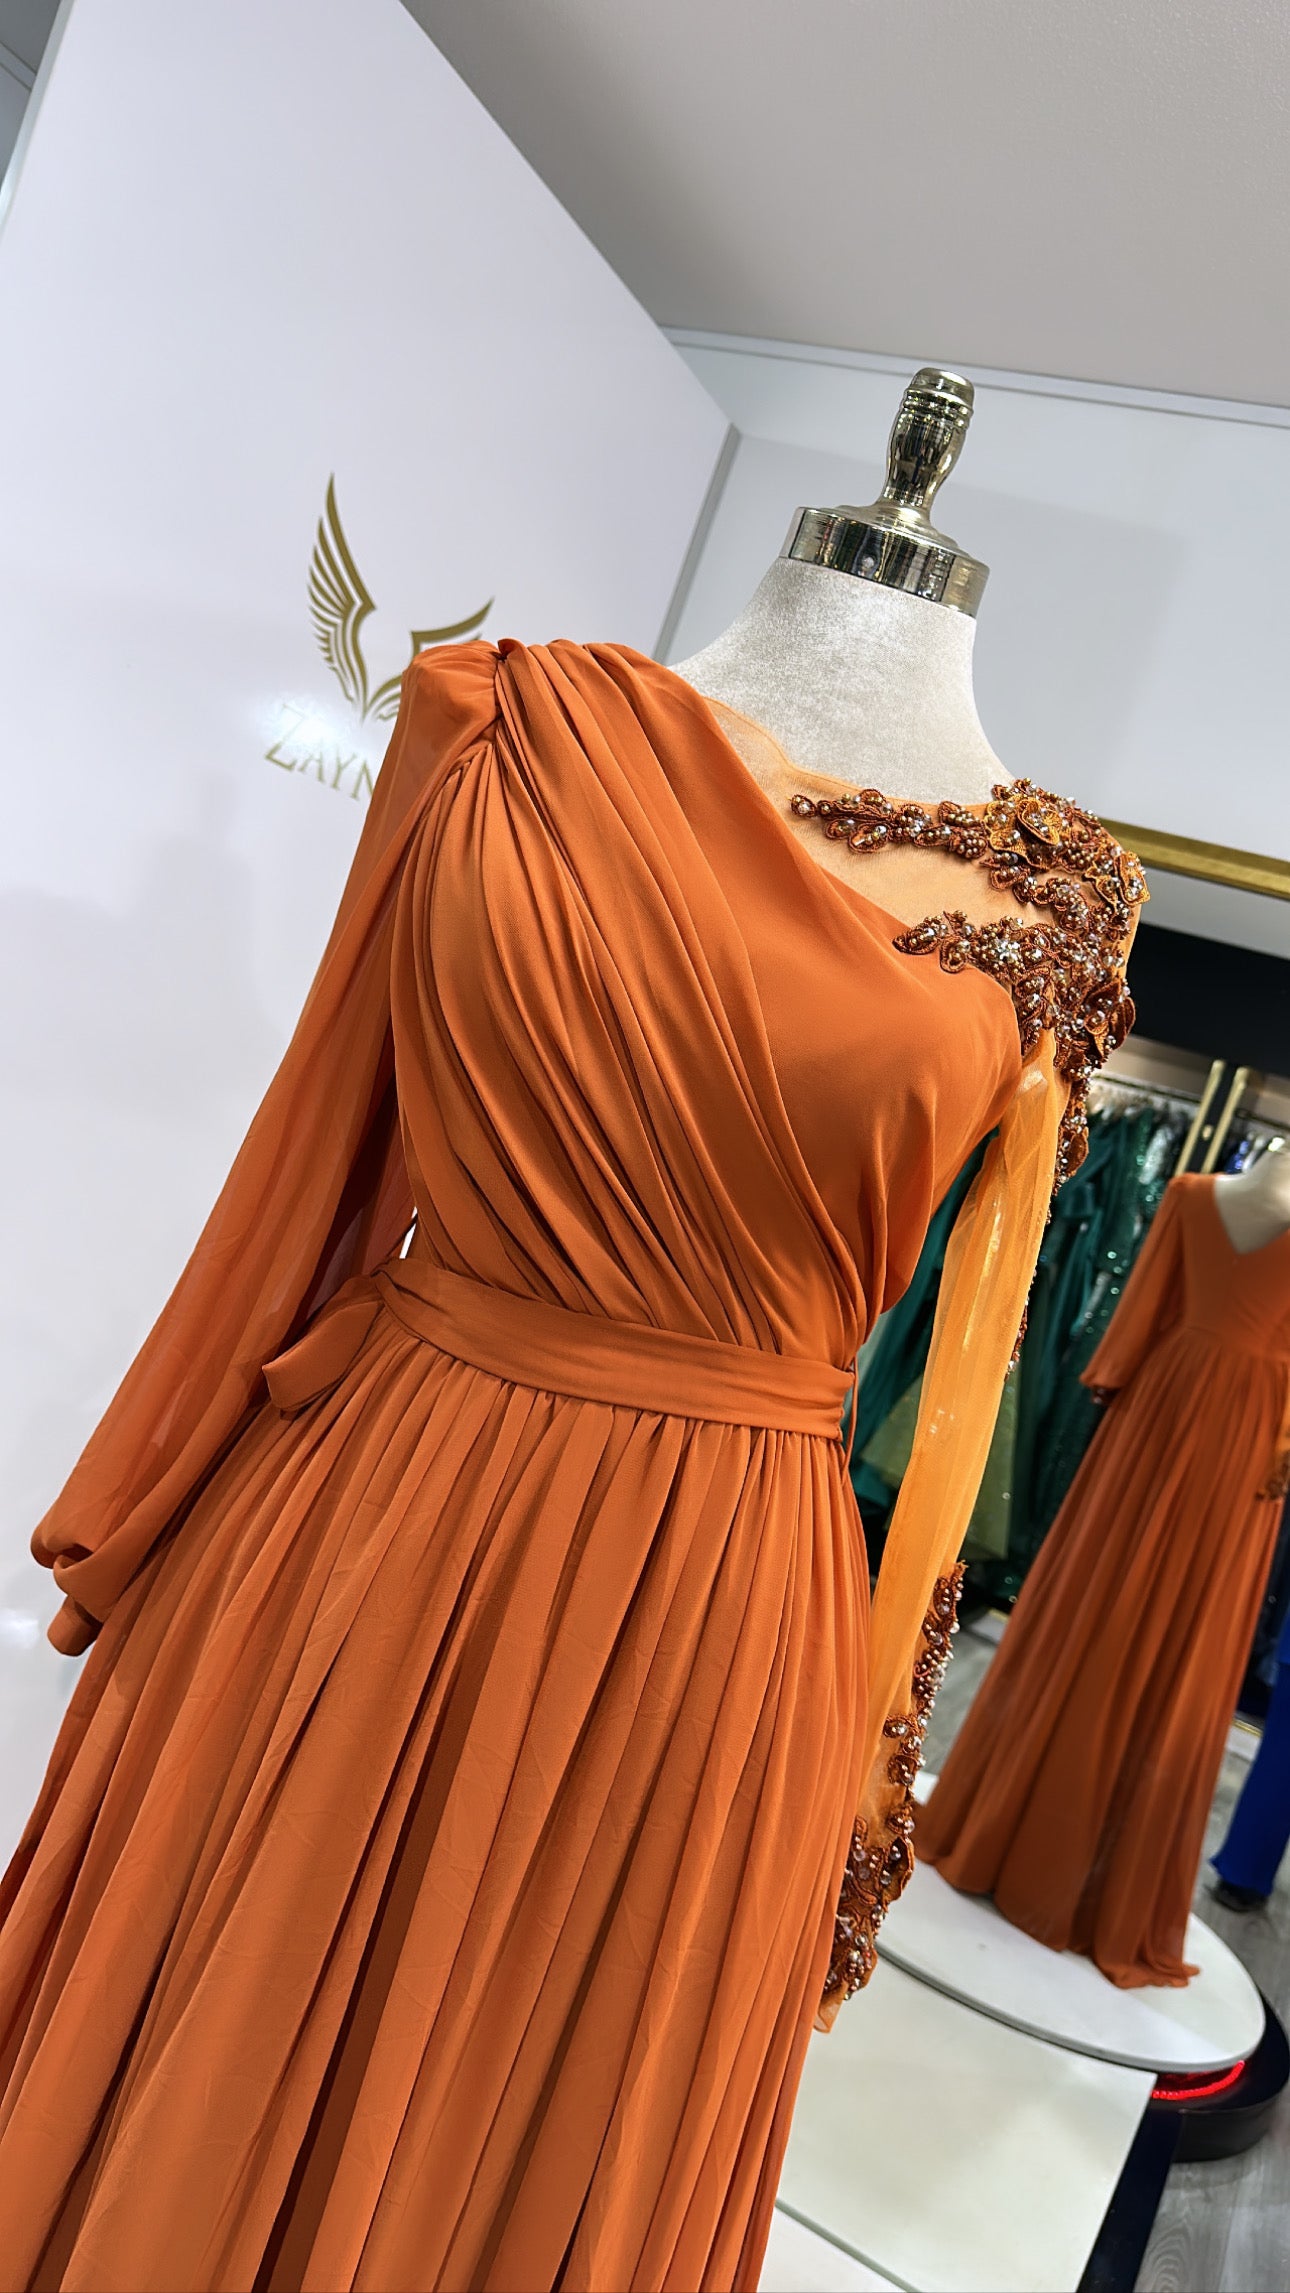 Elegant orange dress chiffon fabric with slit